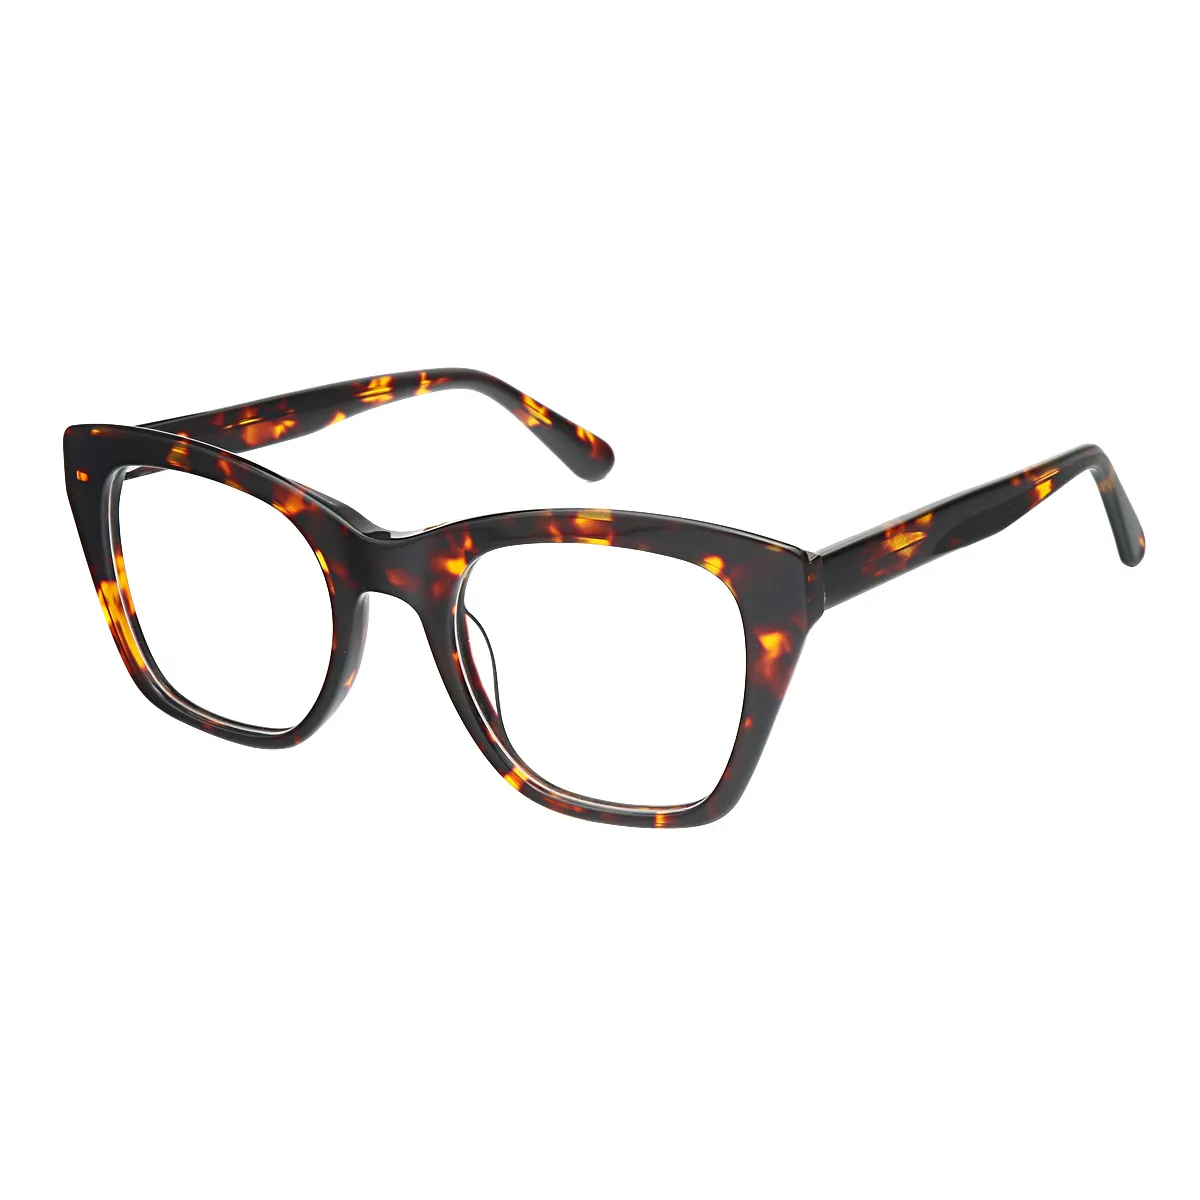 Hadley - Square Tortoiseshell Glasses for Men & Women - EFE